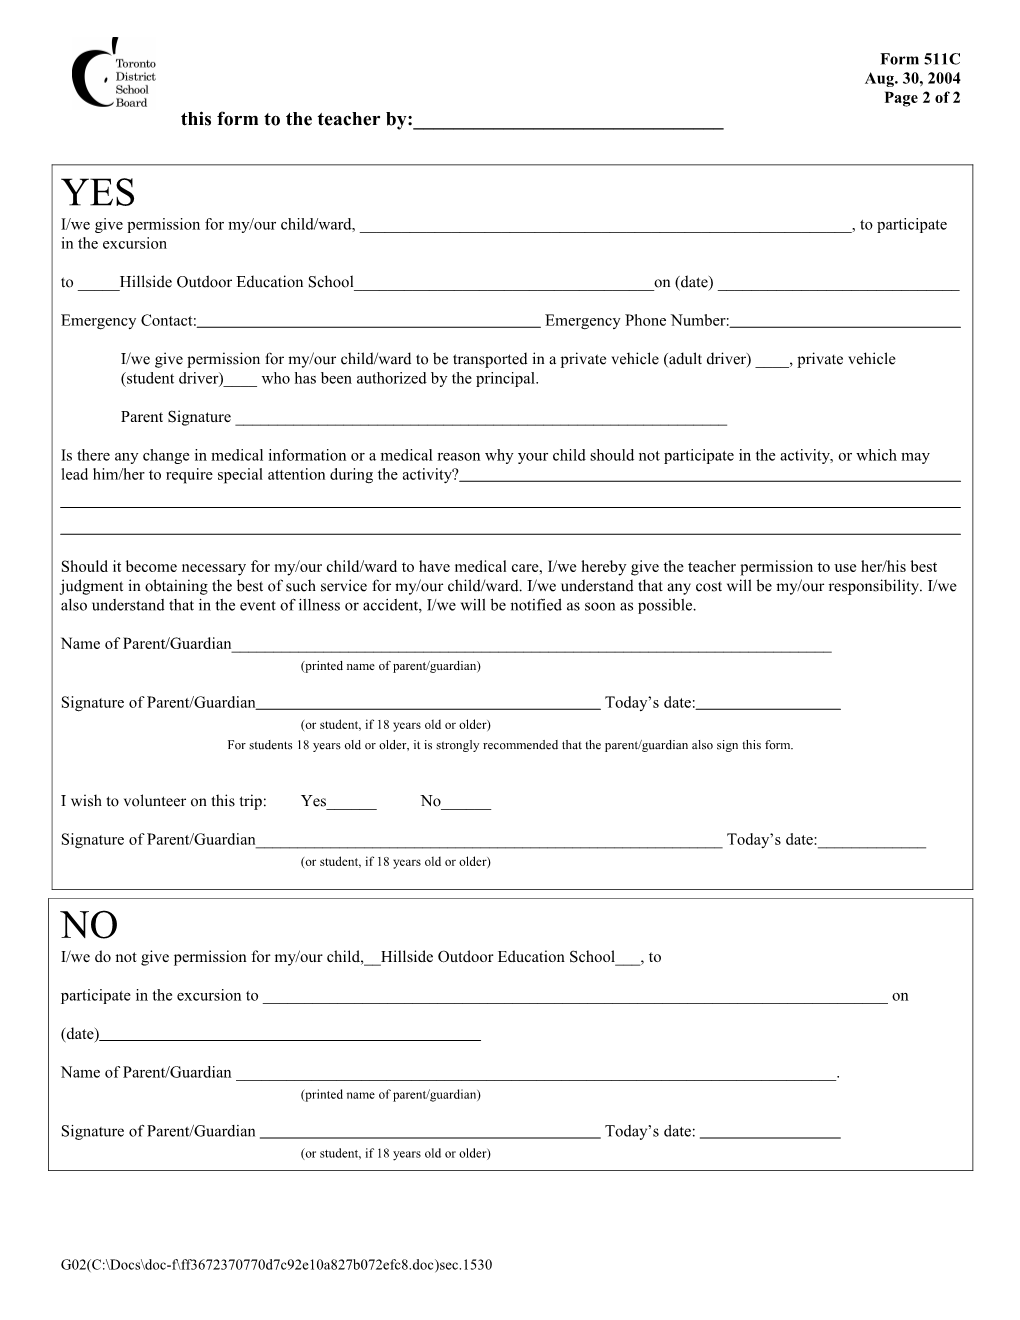 Form 511C: Parent/Guardian Permission for Excursion